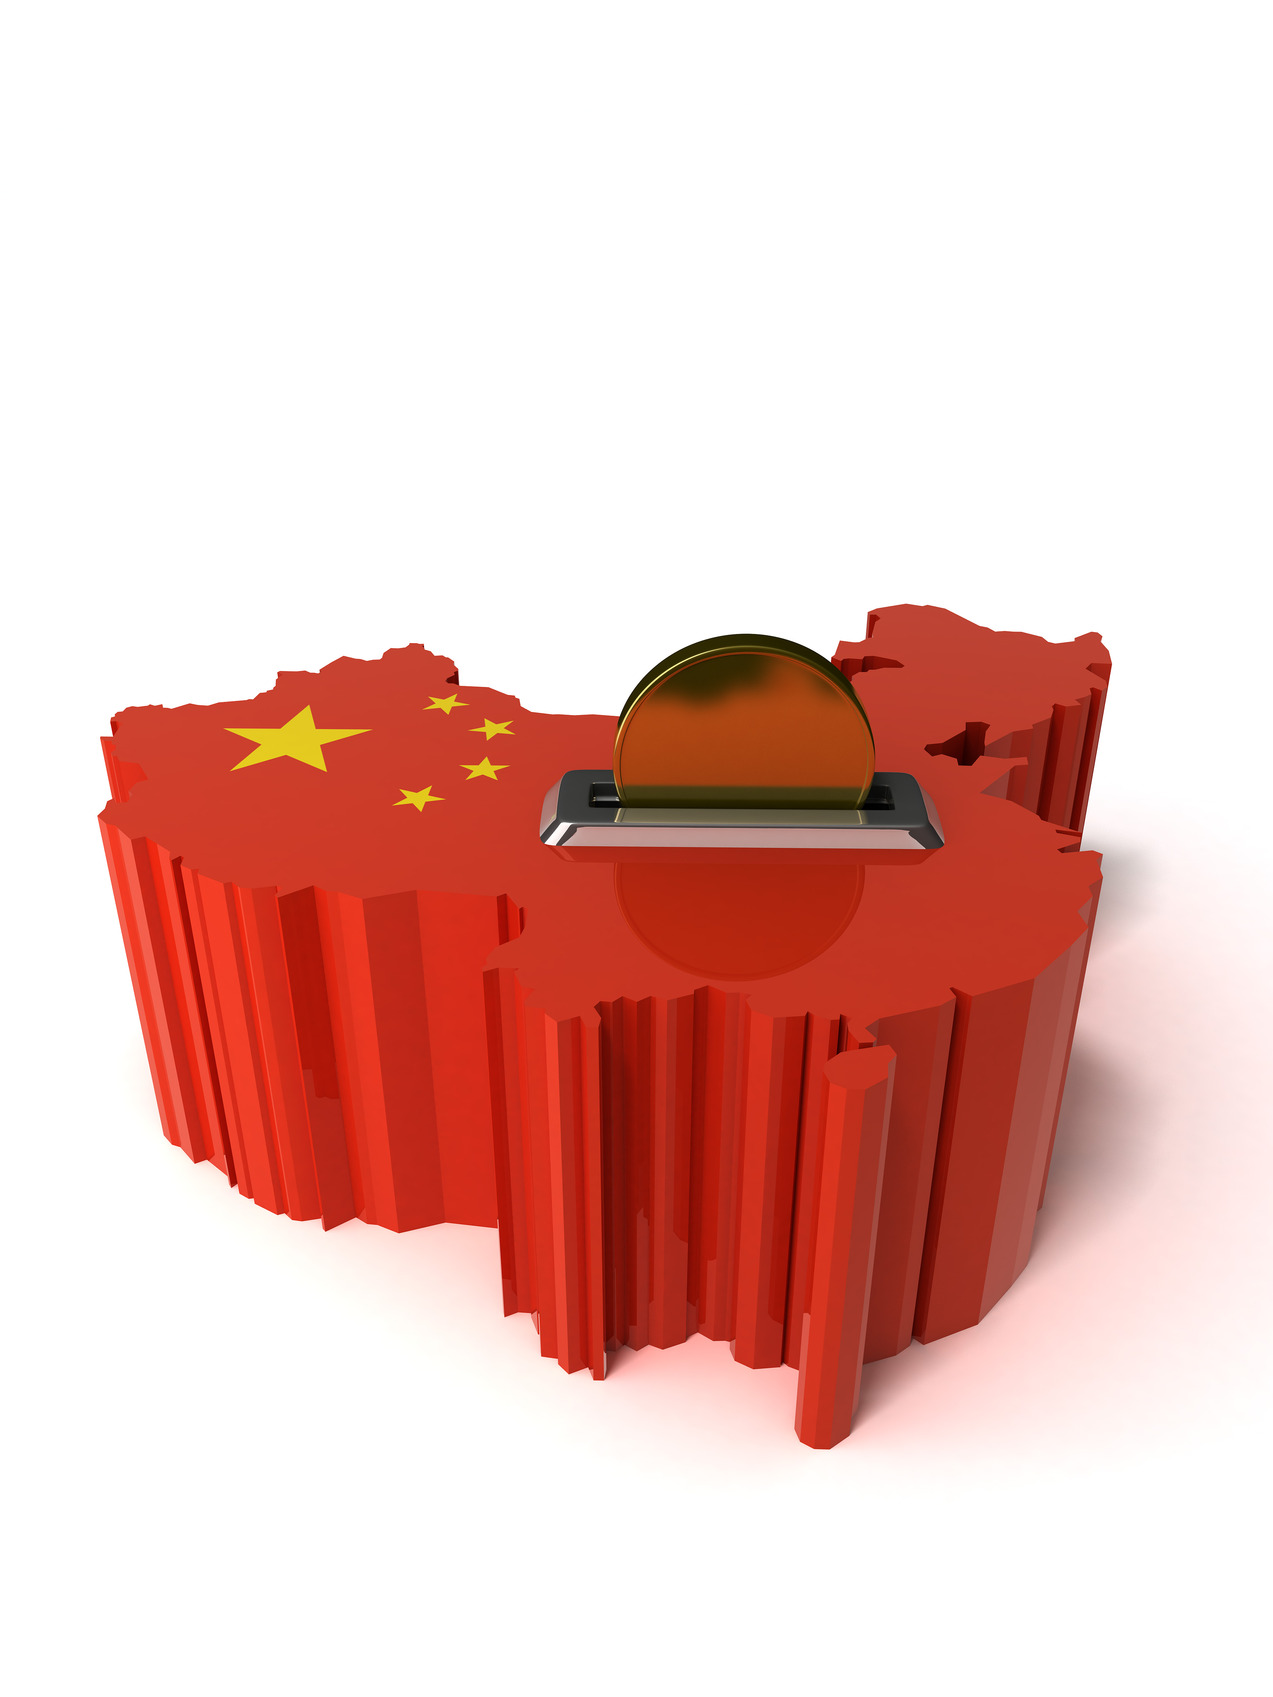 2015년 중국 인터넷 재테크산업 발전추세 전망